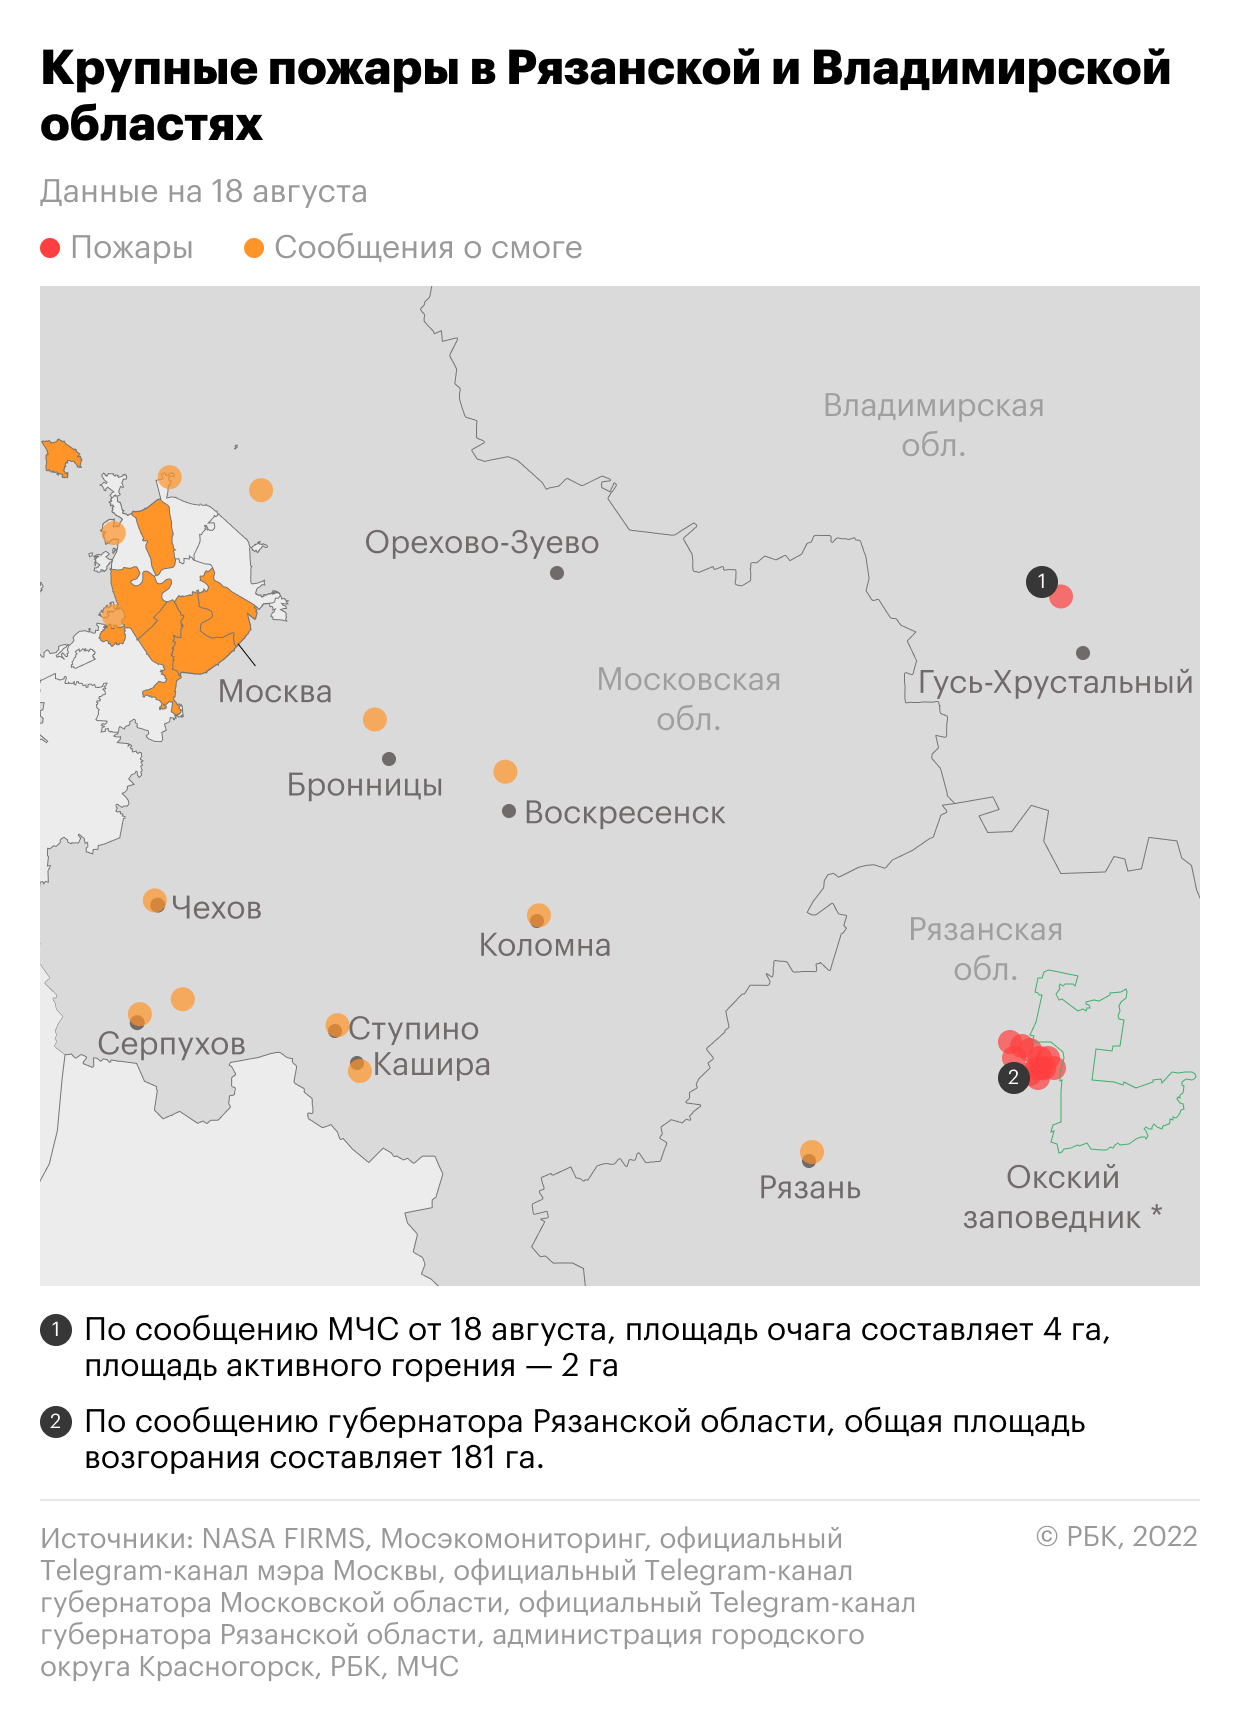 Последствия пожаров в Рязанской и Владимирской областях. Карта — РБК